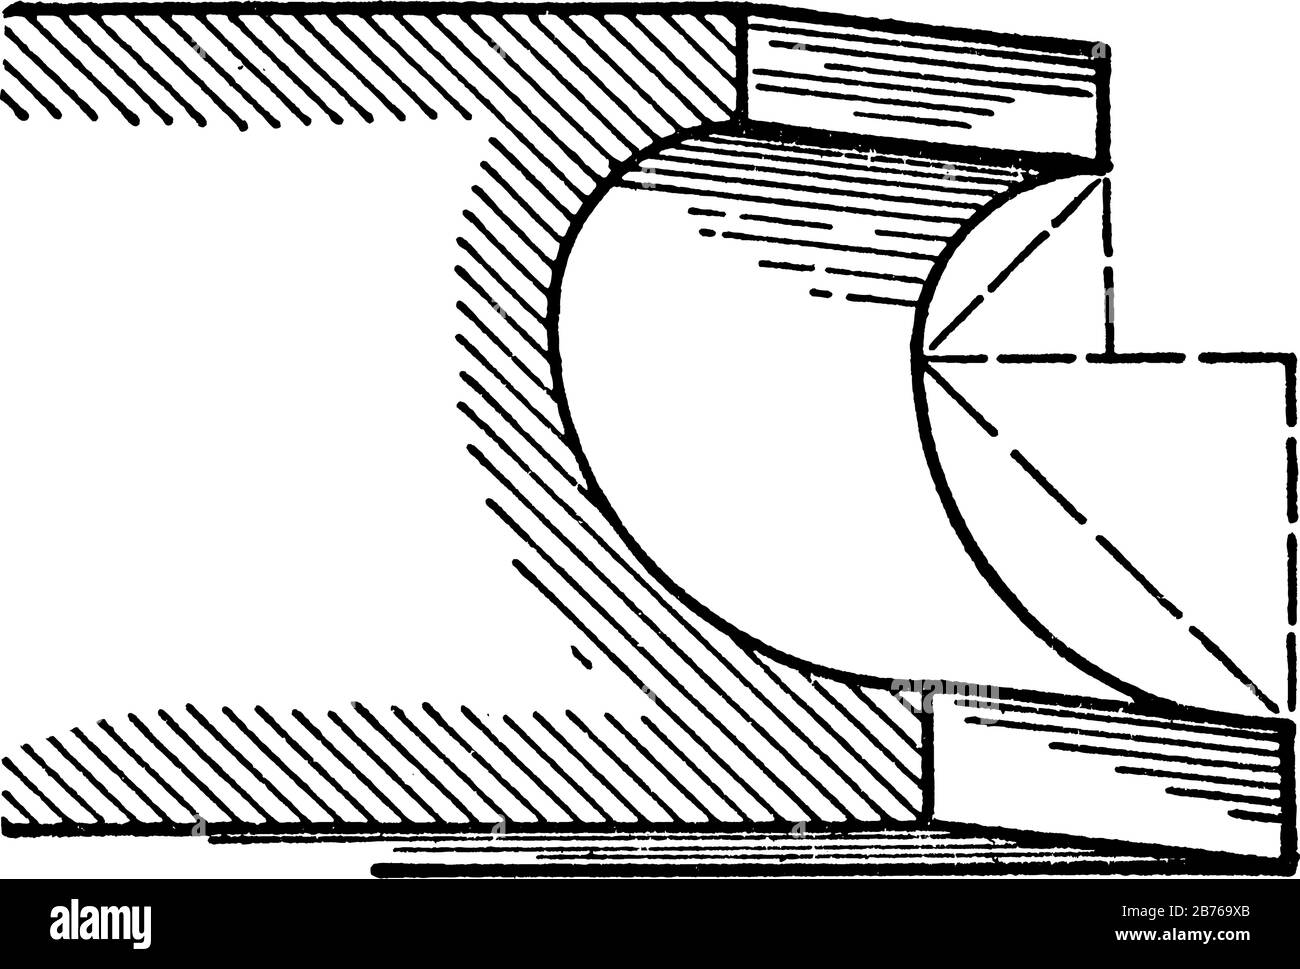 Scotia, EIN römisches Formteil, das in der Regel in den Stützen der Säulen aufgetragen wird, ein Radius, der dem doppelten Radius entspricht, eine Vintage-Linien-Zeichnung oder eine Gravierzeichnung, die illustratio ist Stock Vektor